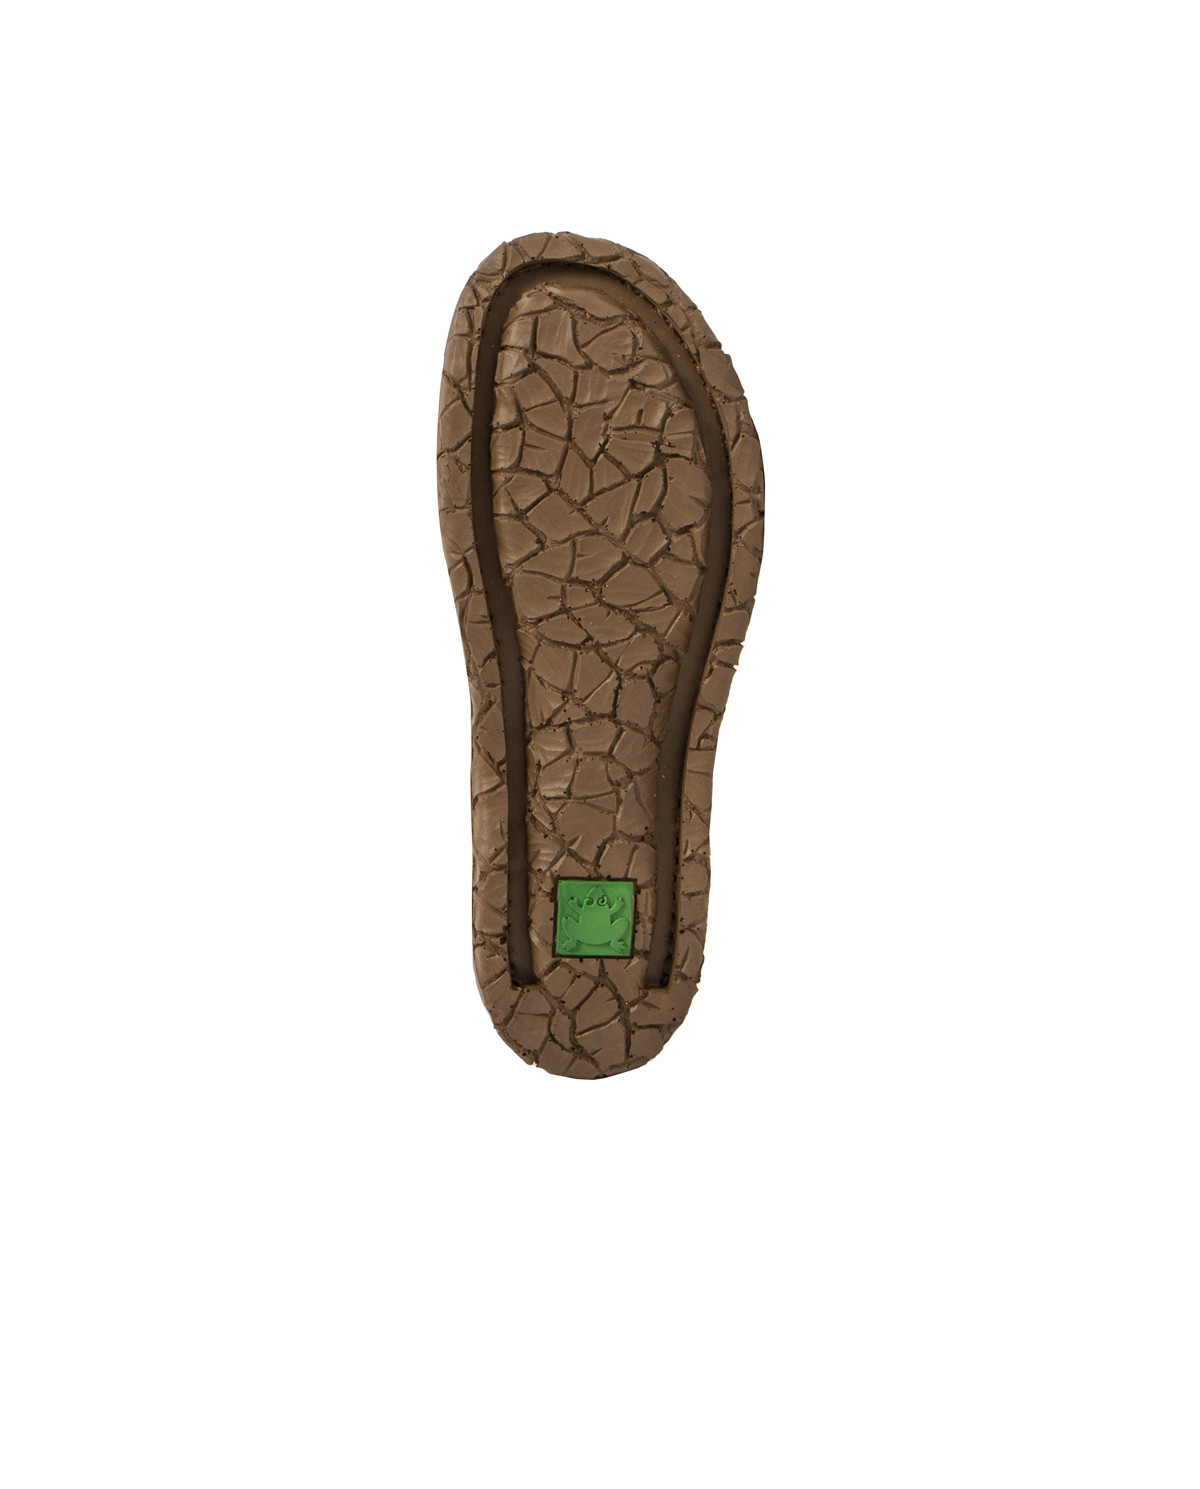 Sandales confortables plates en cuir bout fermé à bride cheville - Marron - El naturalista